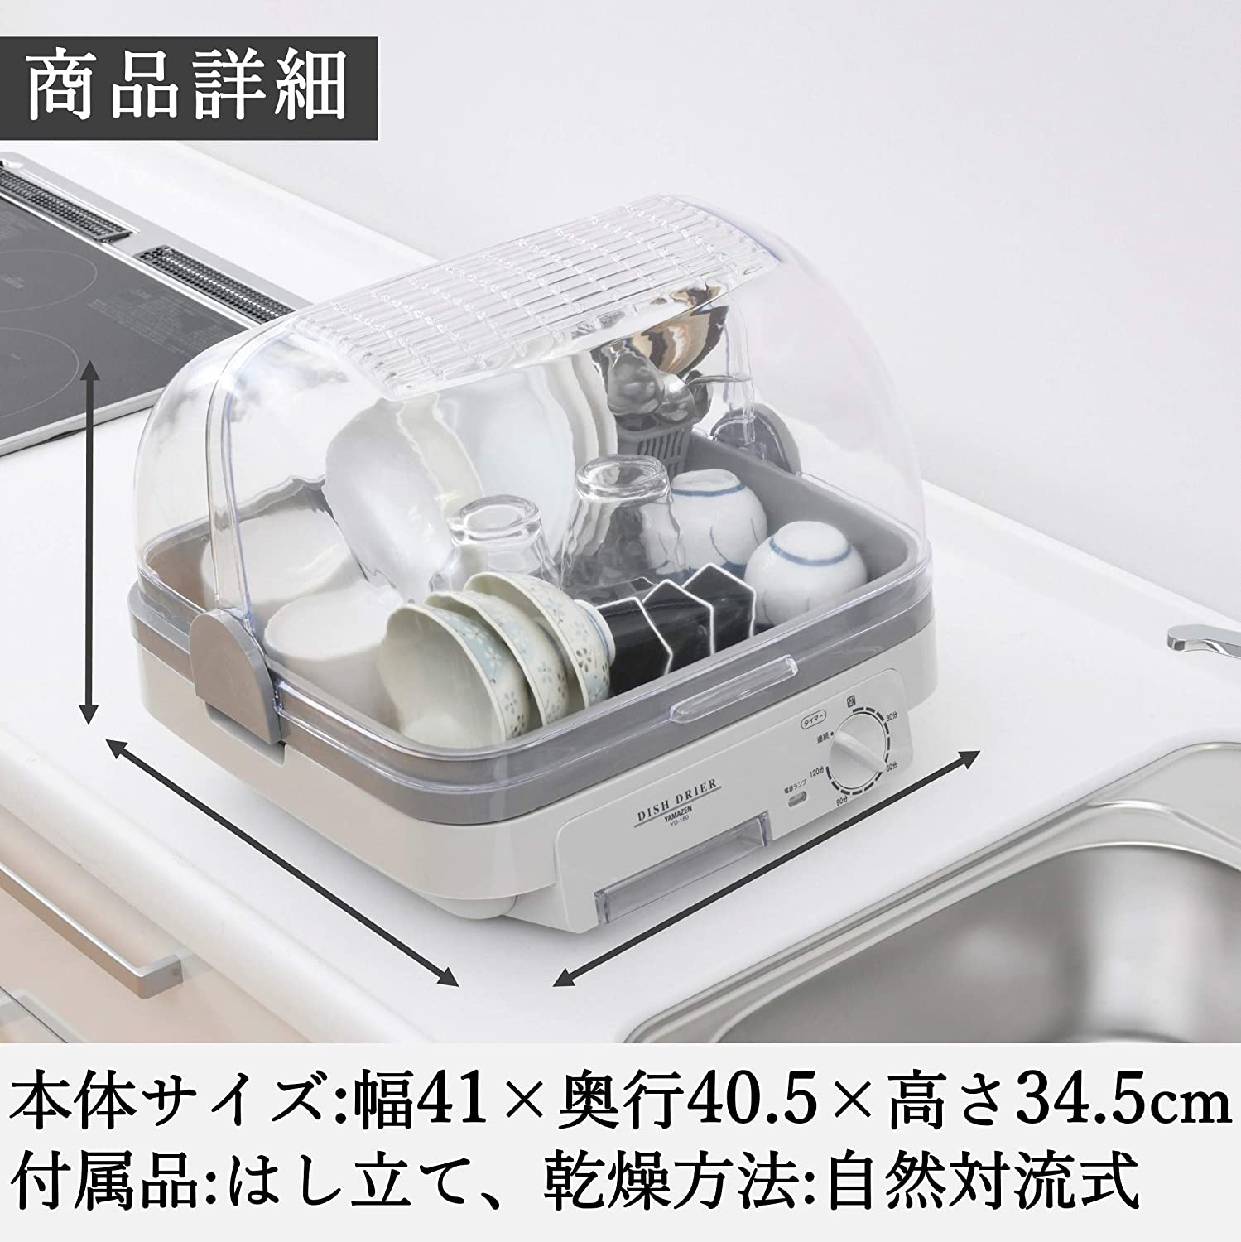 山善(YAMAZEN) 食器乾燥機 YD-180の商品画像7 